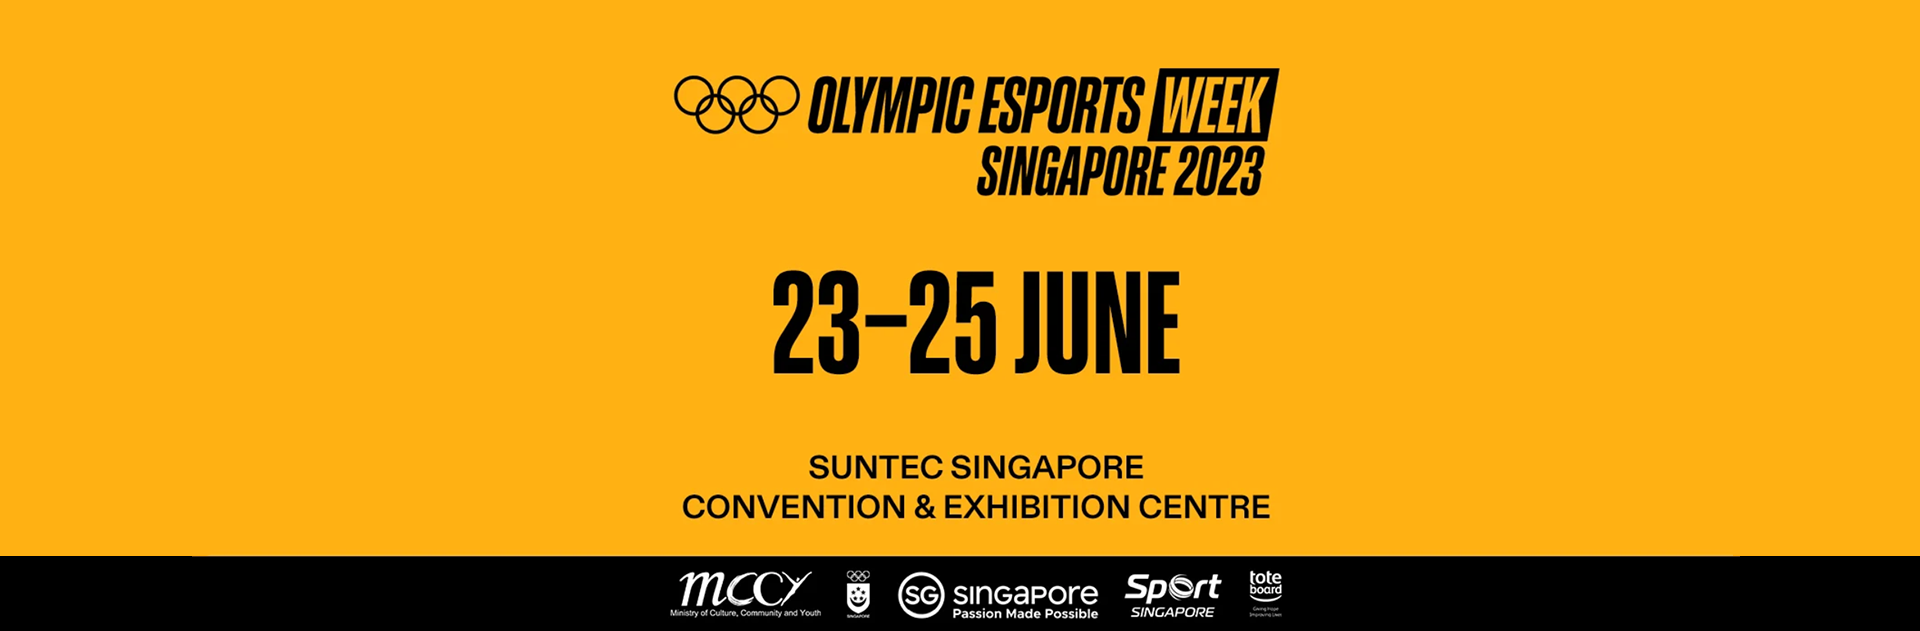 Olympic Esports Week Singapore 2023 Community Activation